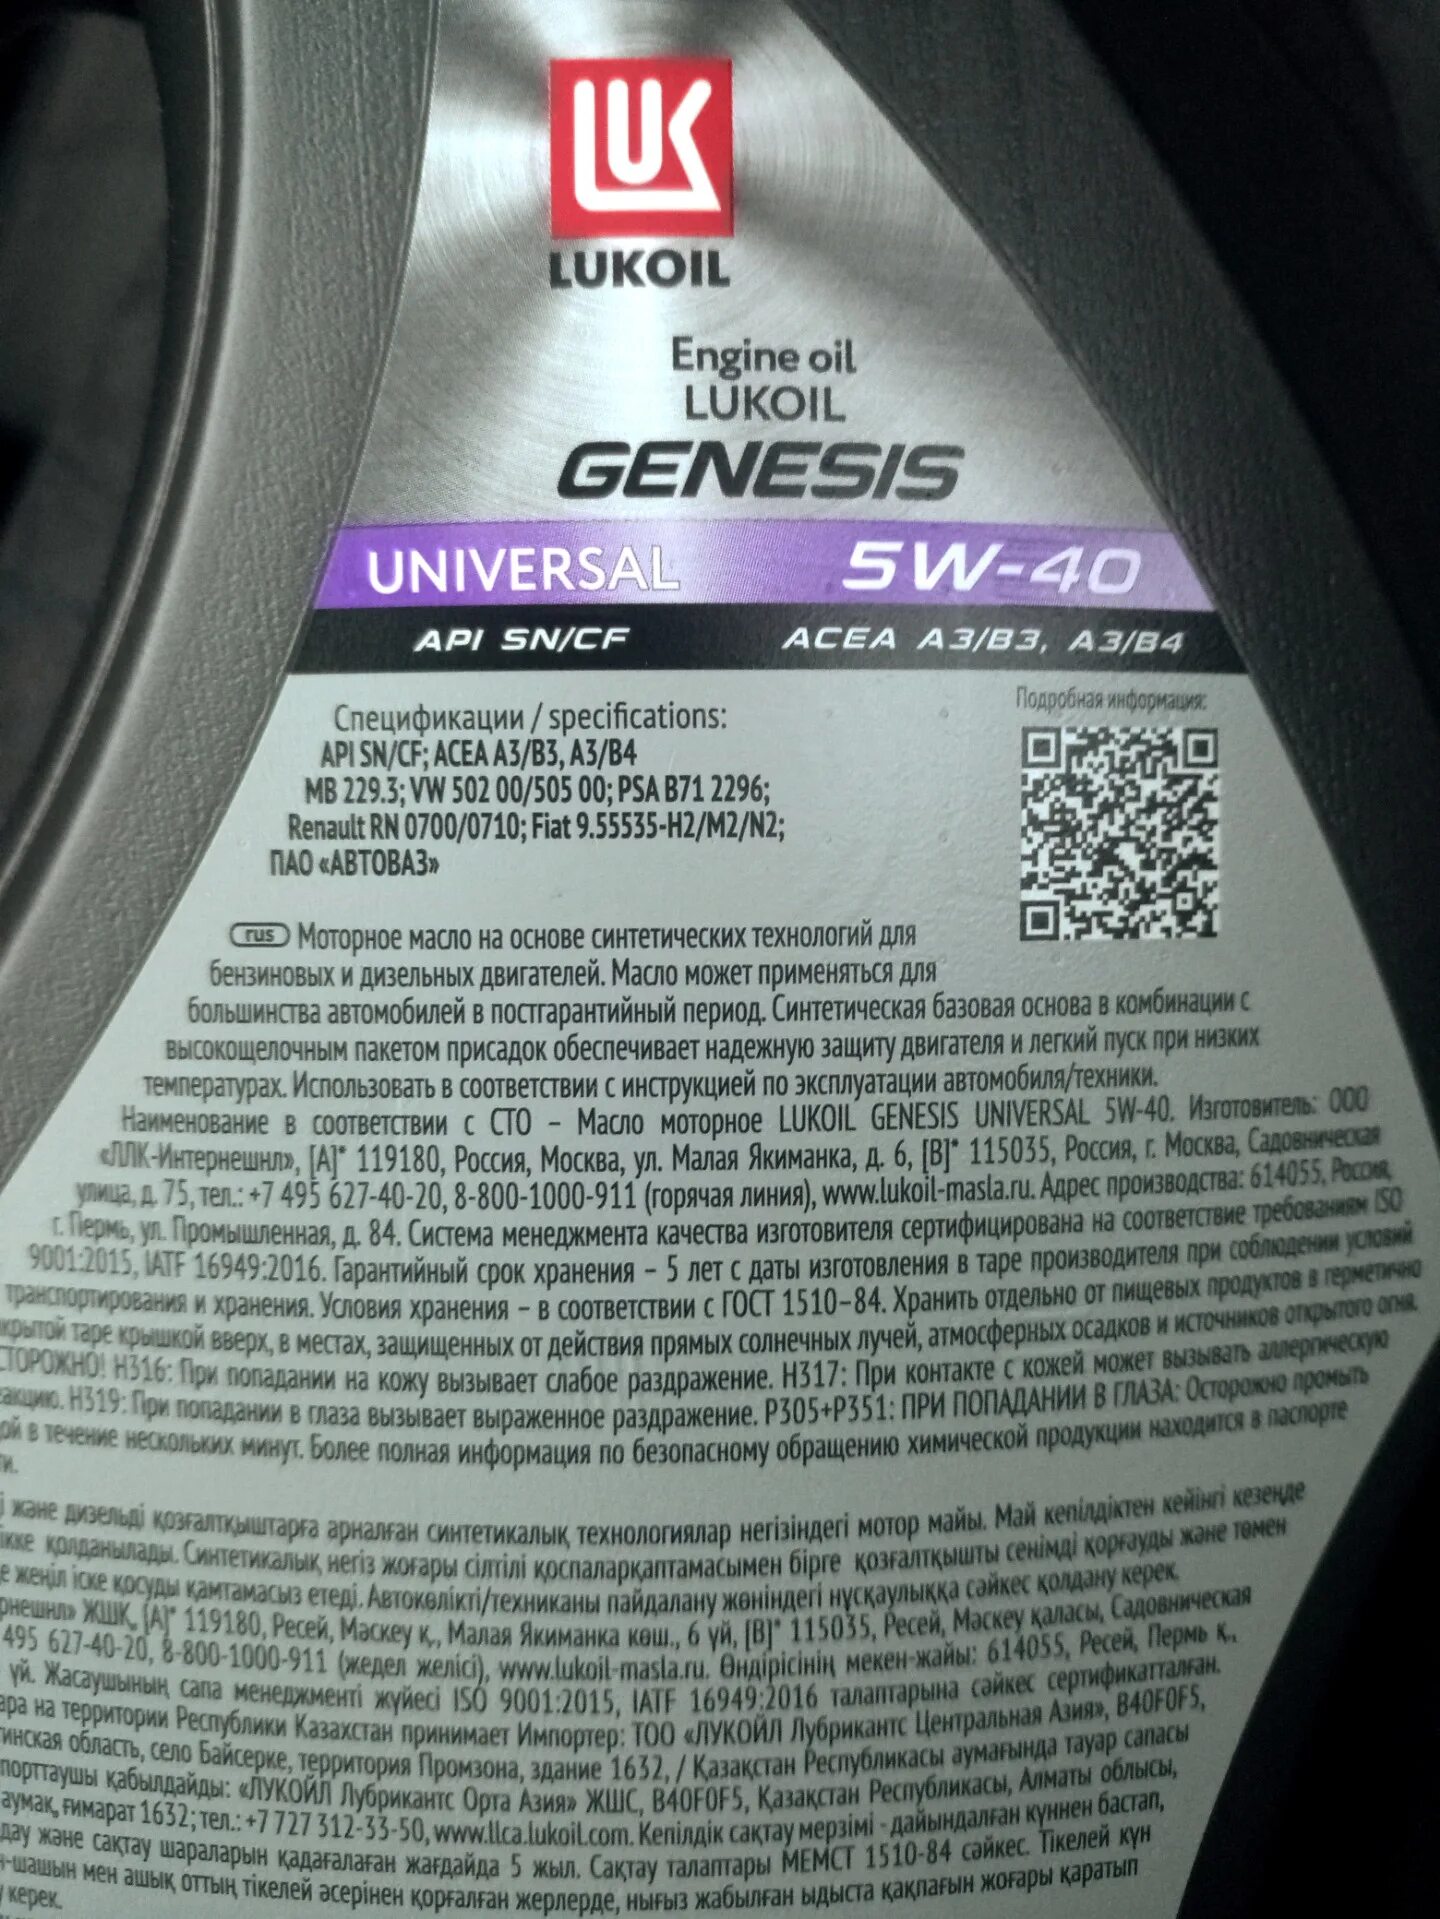 Масло лукойл генезис универсал 5w40. Лукойл Genesis Universal 5w40. Genesis Universal 5w-40. Lukoil Genesis Universal 5w-40. Лукойл масла Genesis Universal.